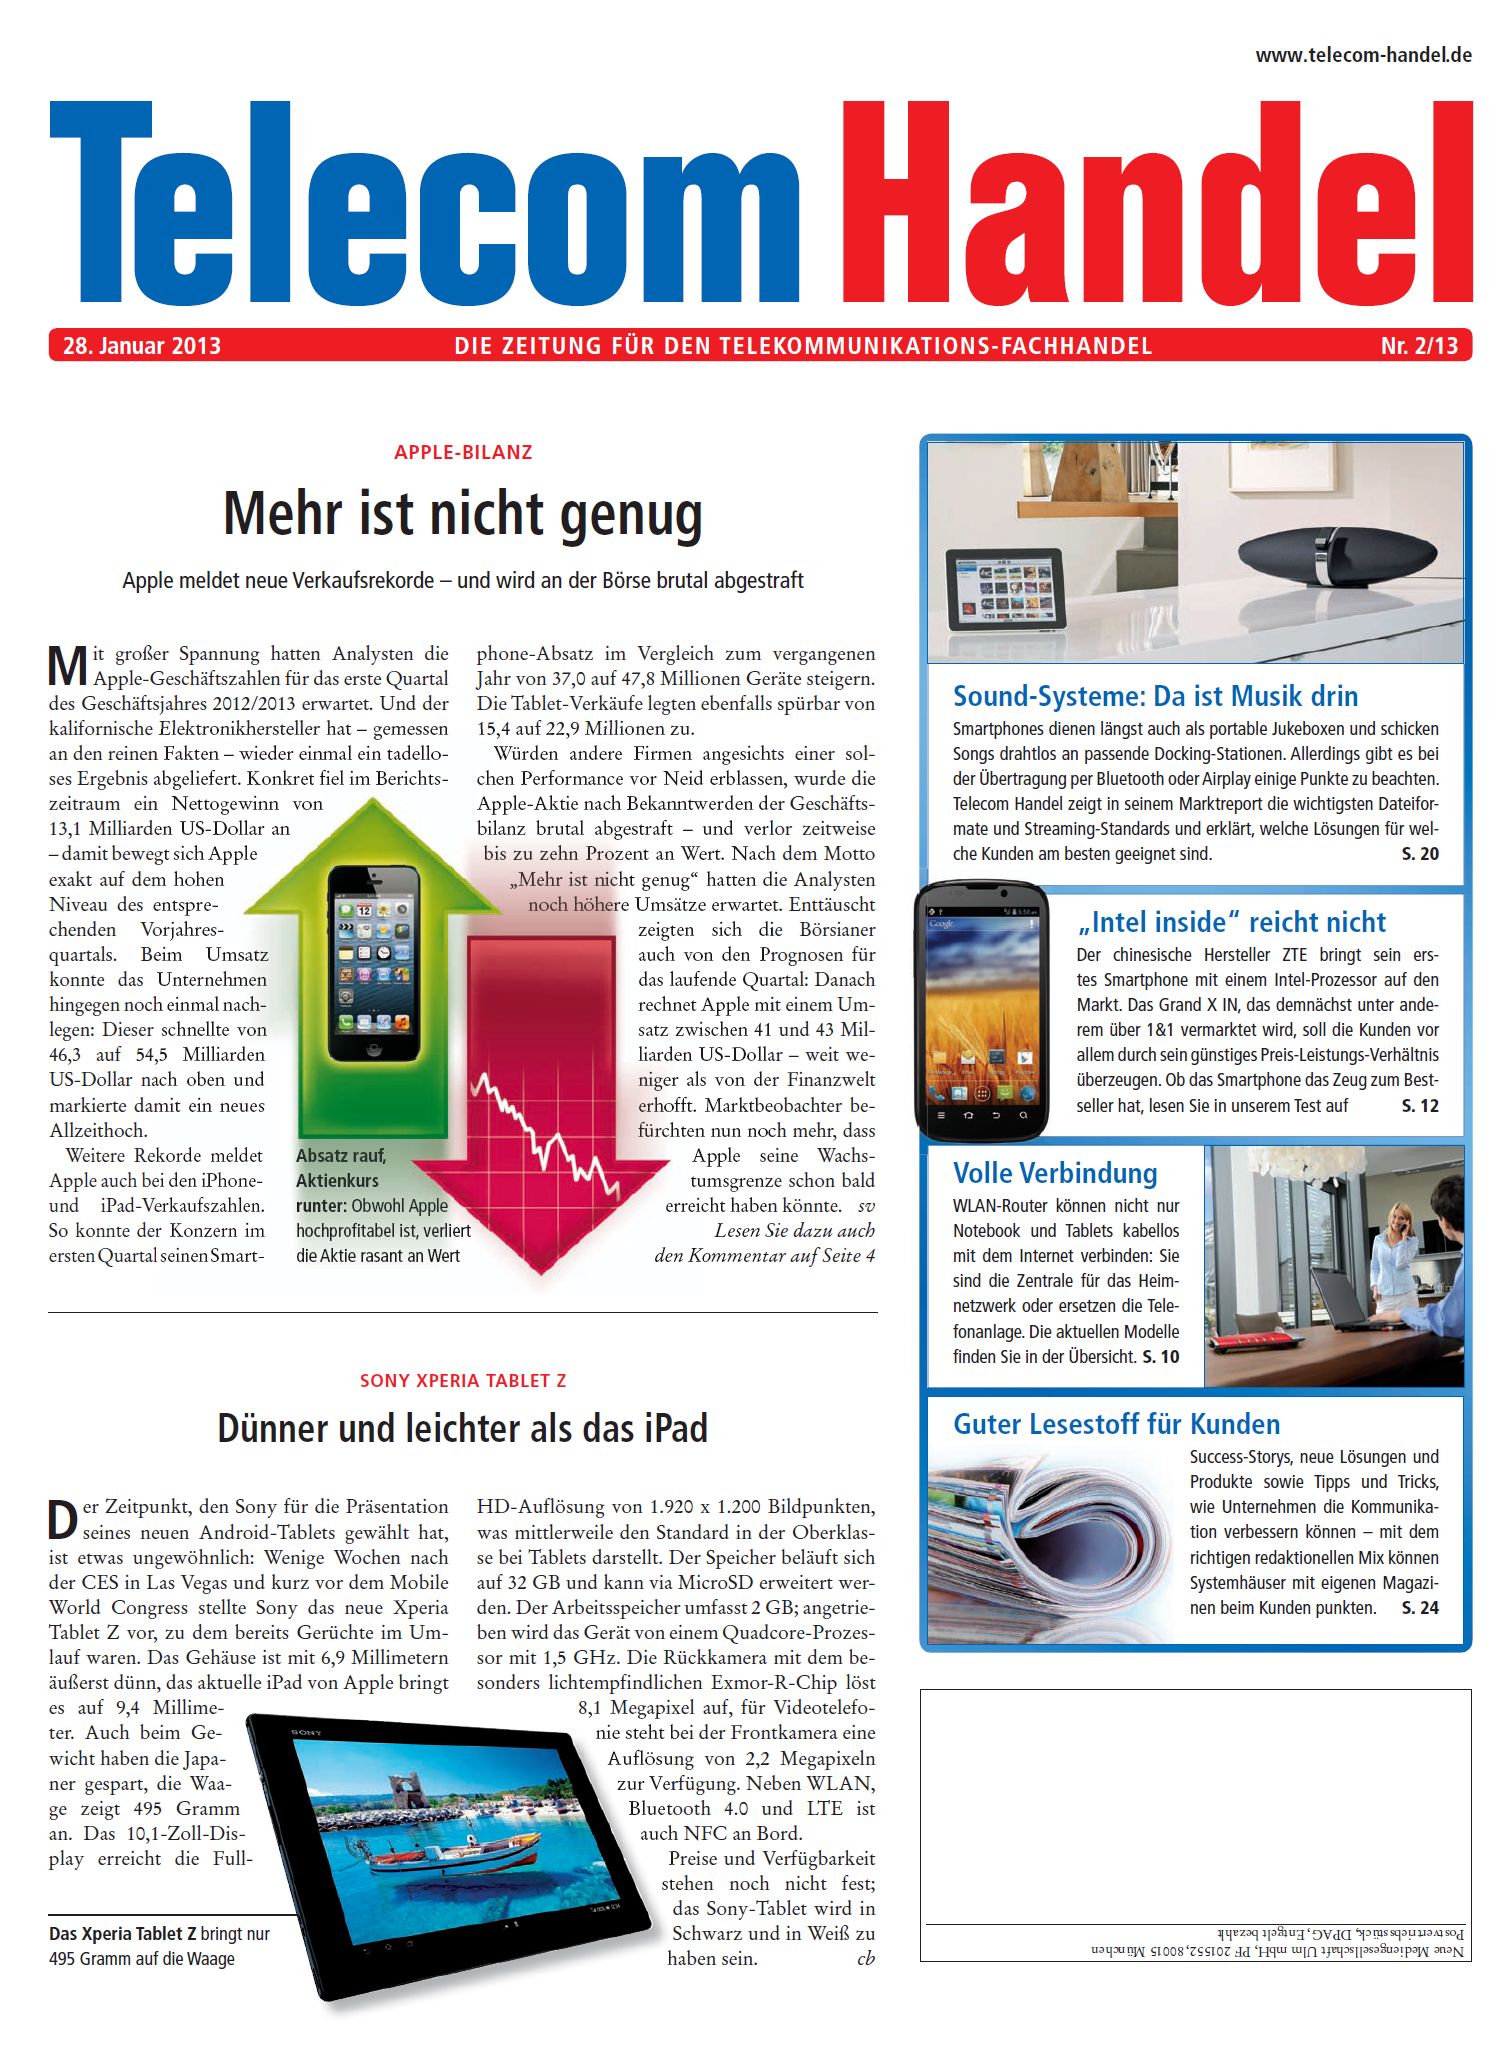 Telecom Handel Ausgabe 02/2013